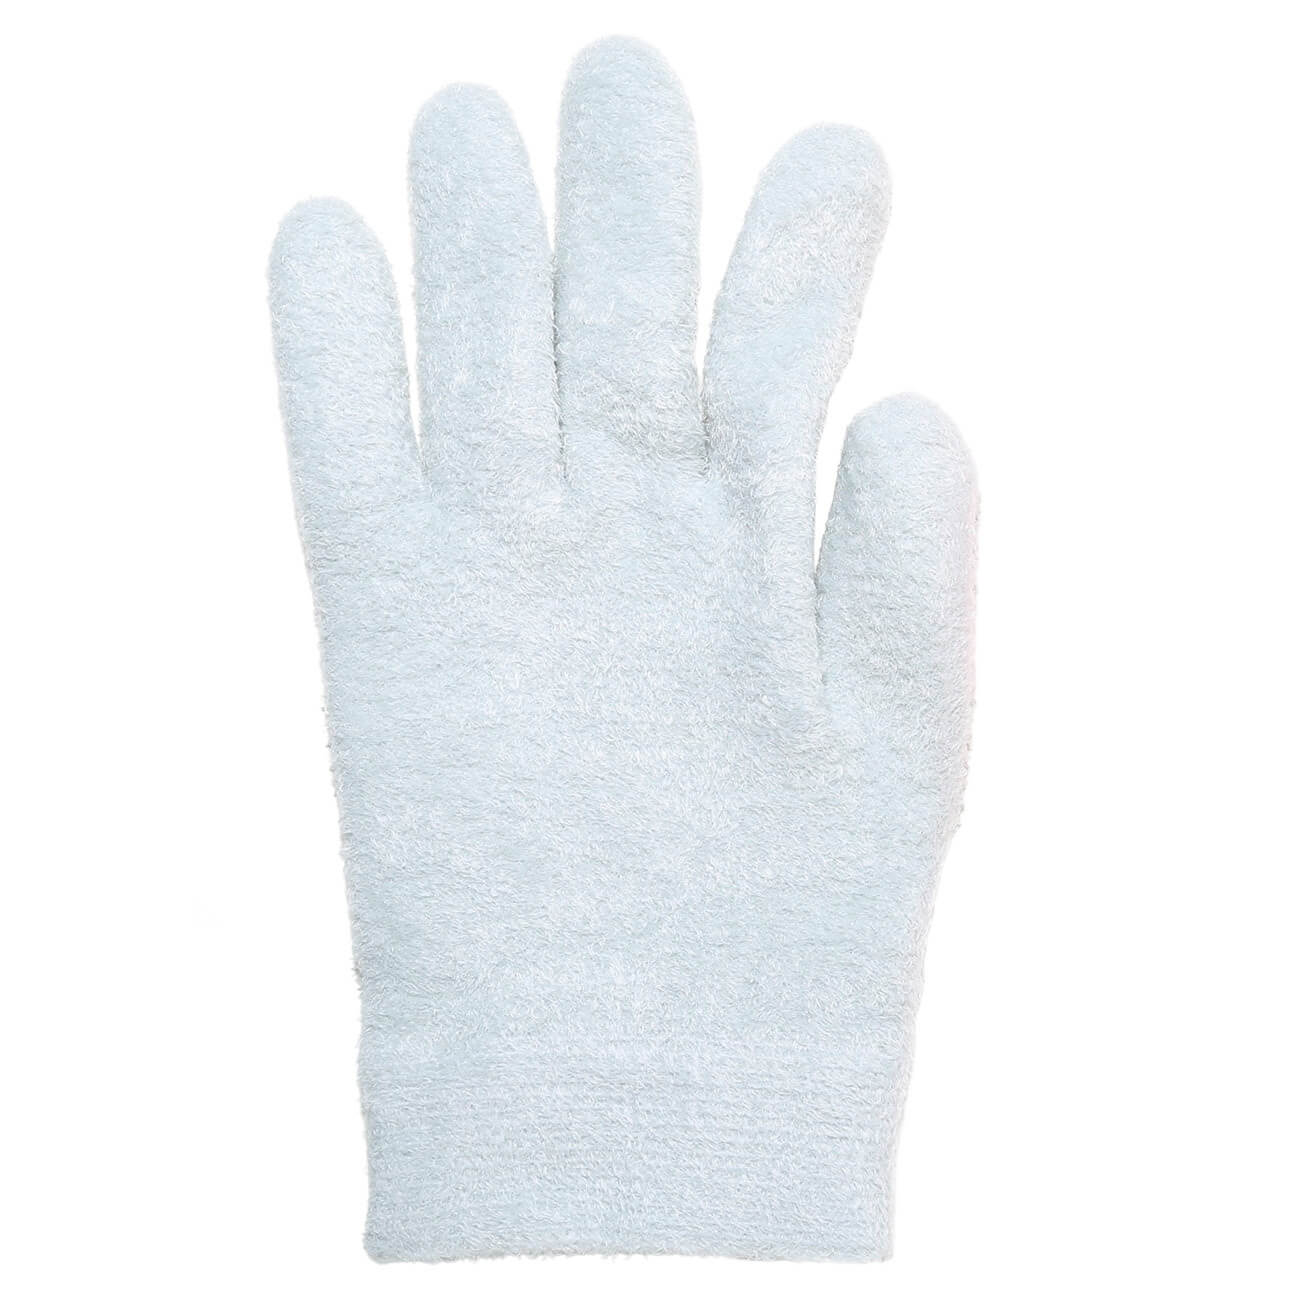 СПА-перчатки гелевые, 20 см, полиэстер, многоразовые, серые, Spa изображение № 1